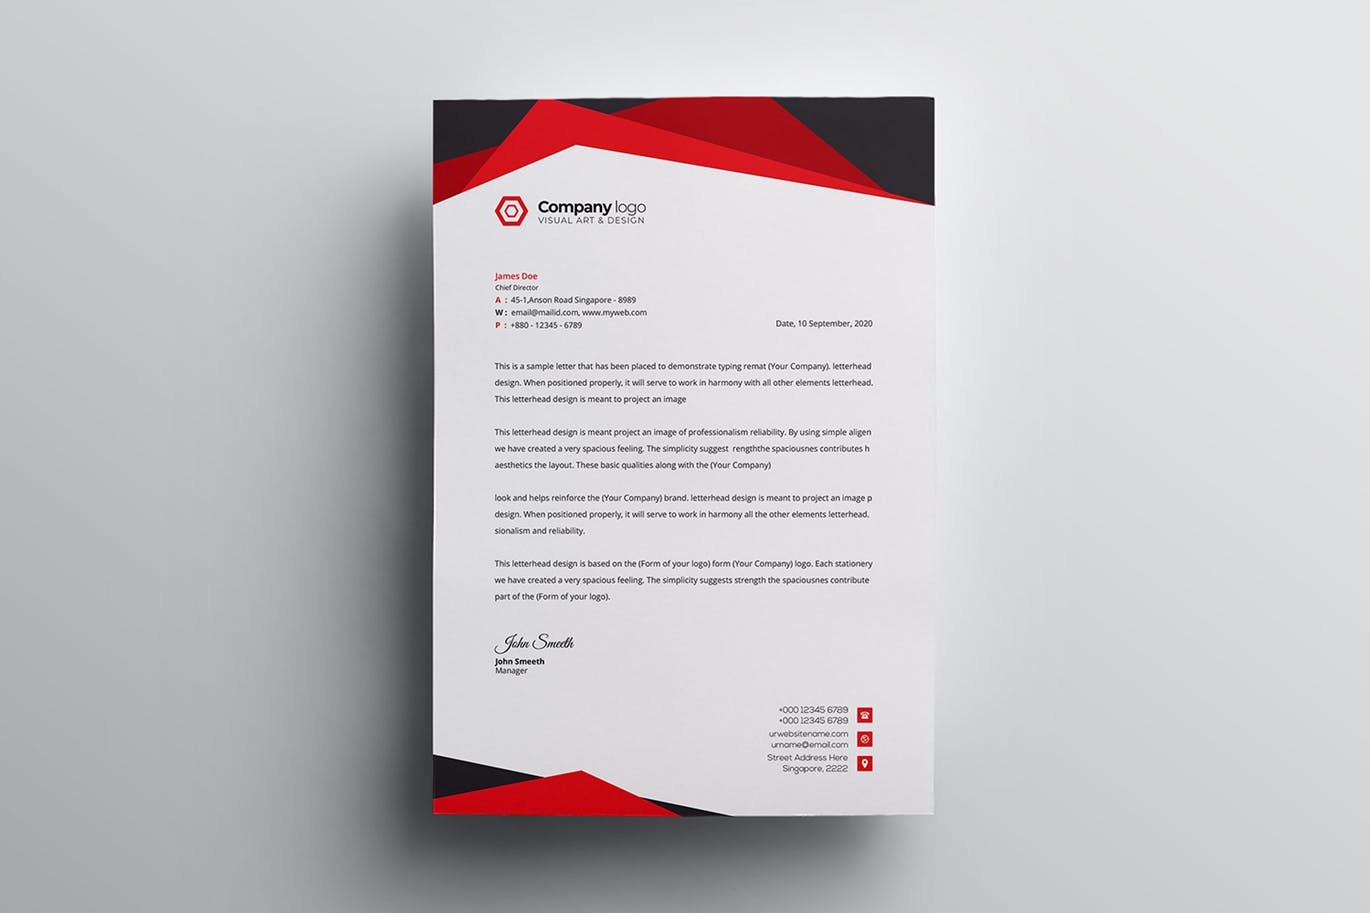 信息科技企业信封设计模板v2 Letterhead插图(3)